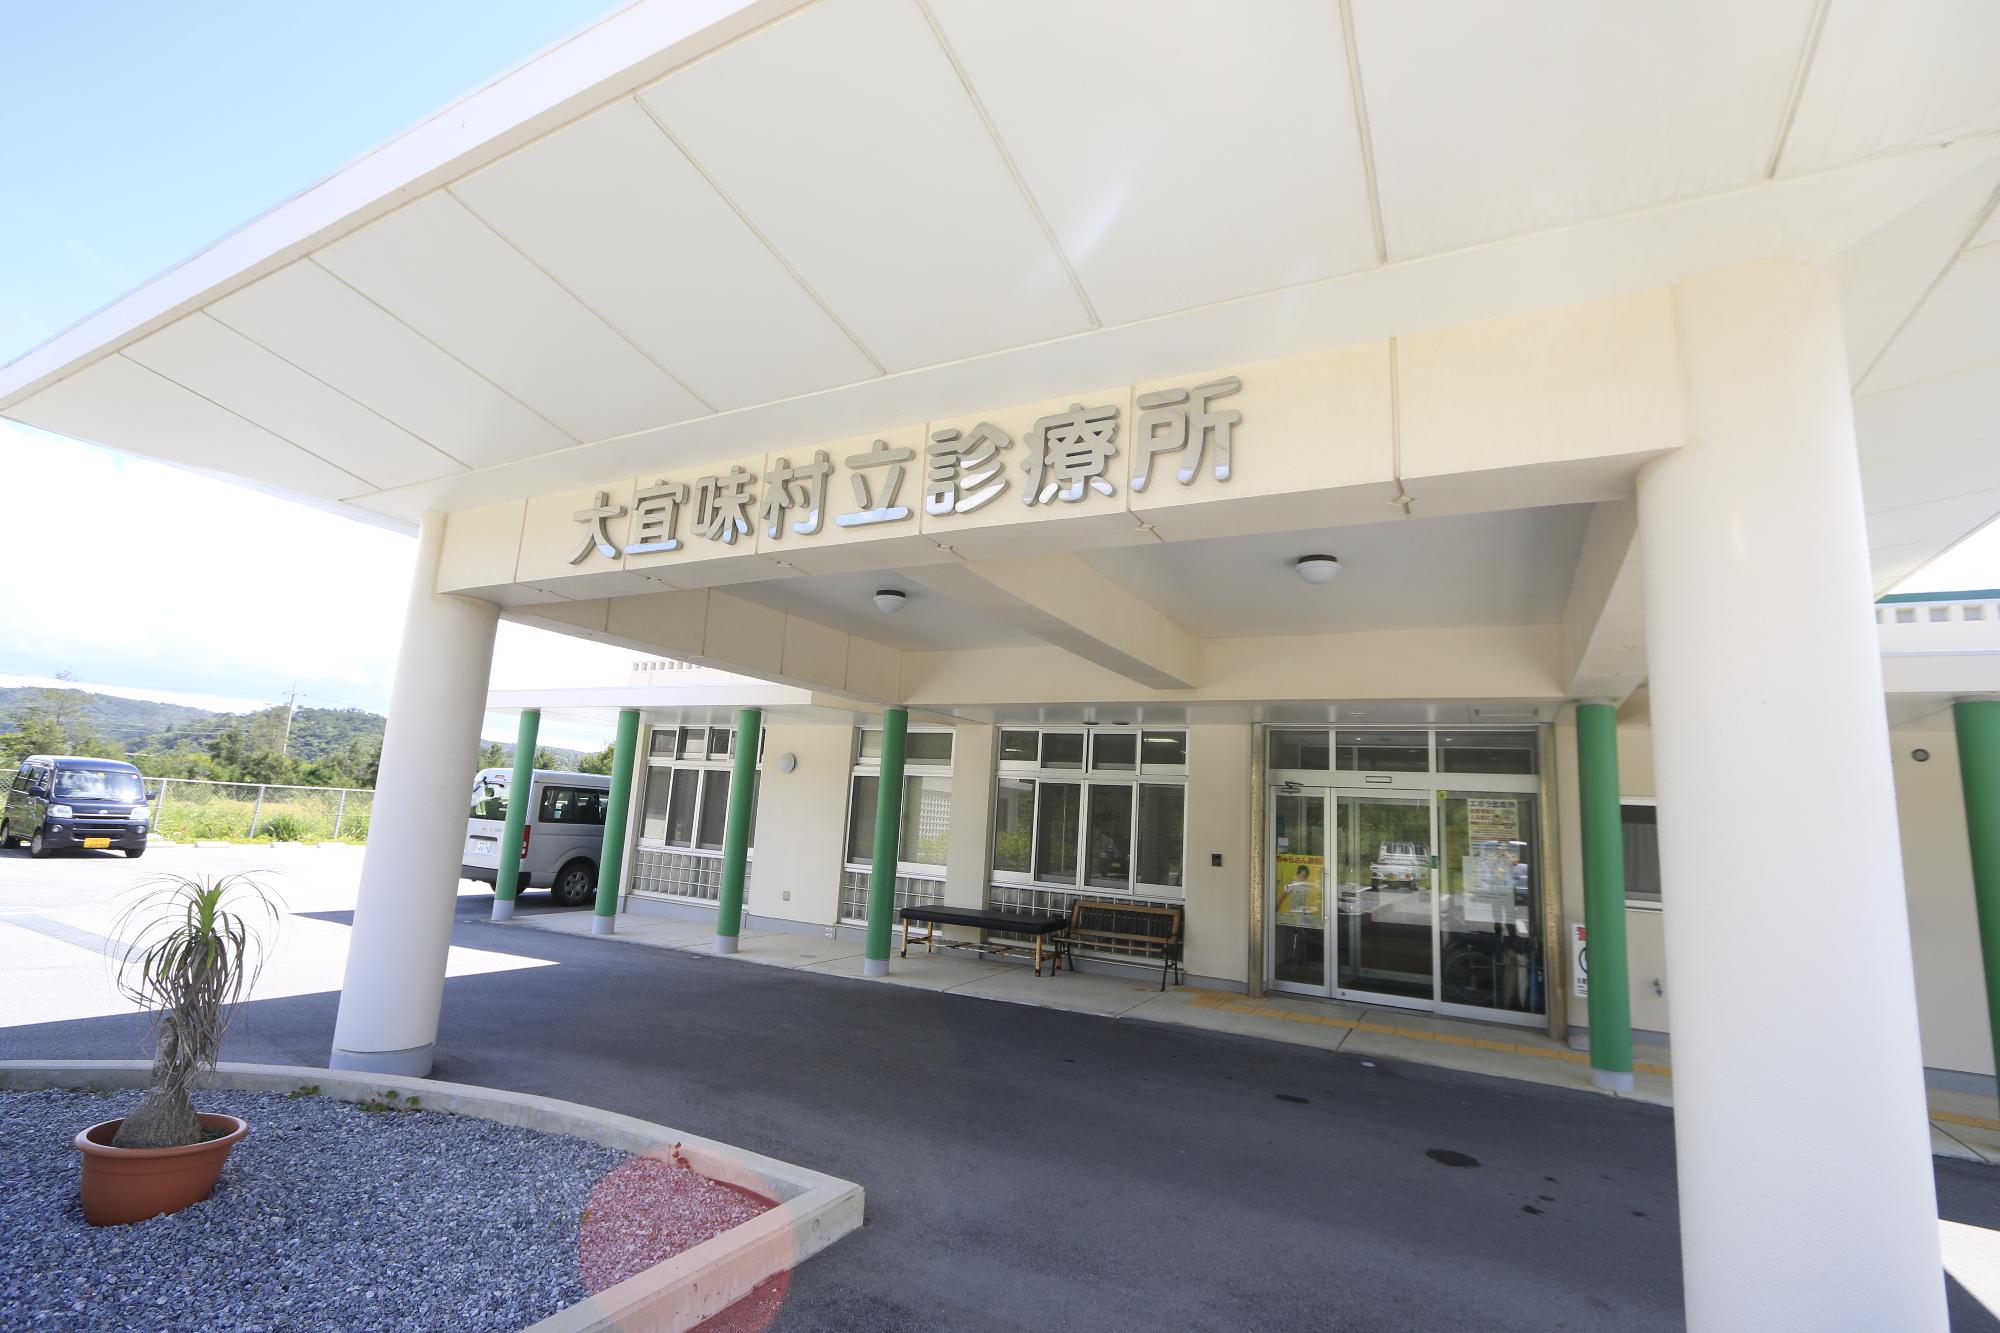 白を基調とした建物で柱が緑色になっており、入口にベンチが設置されている診療所入口の写真